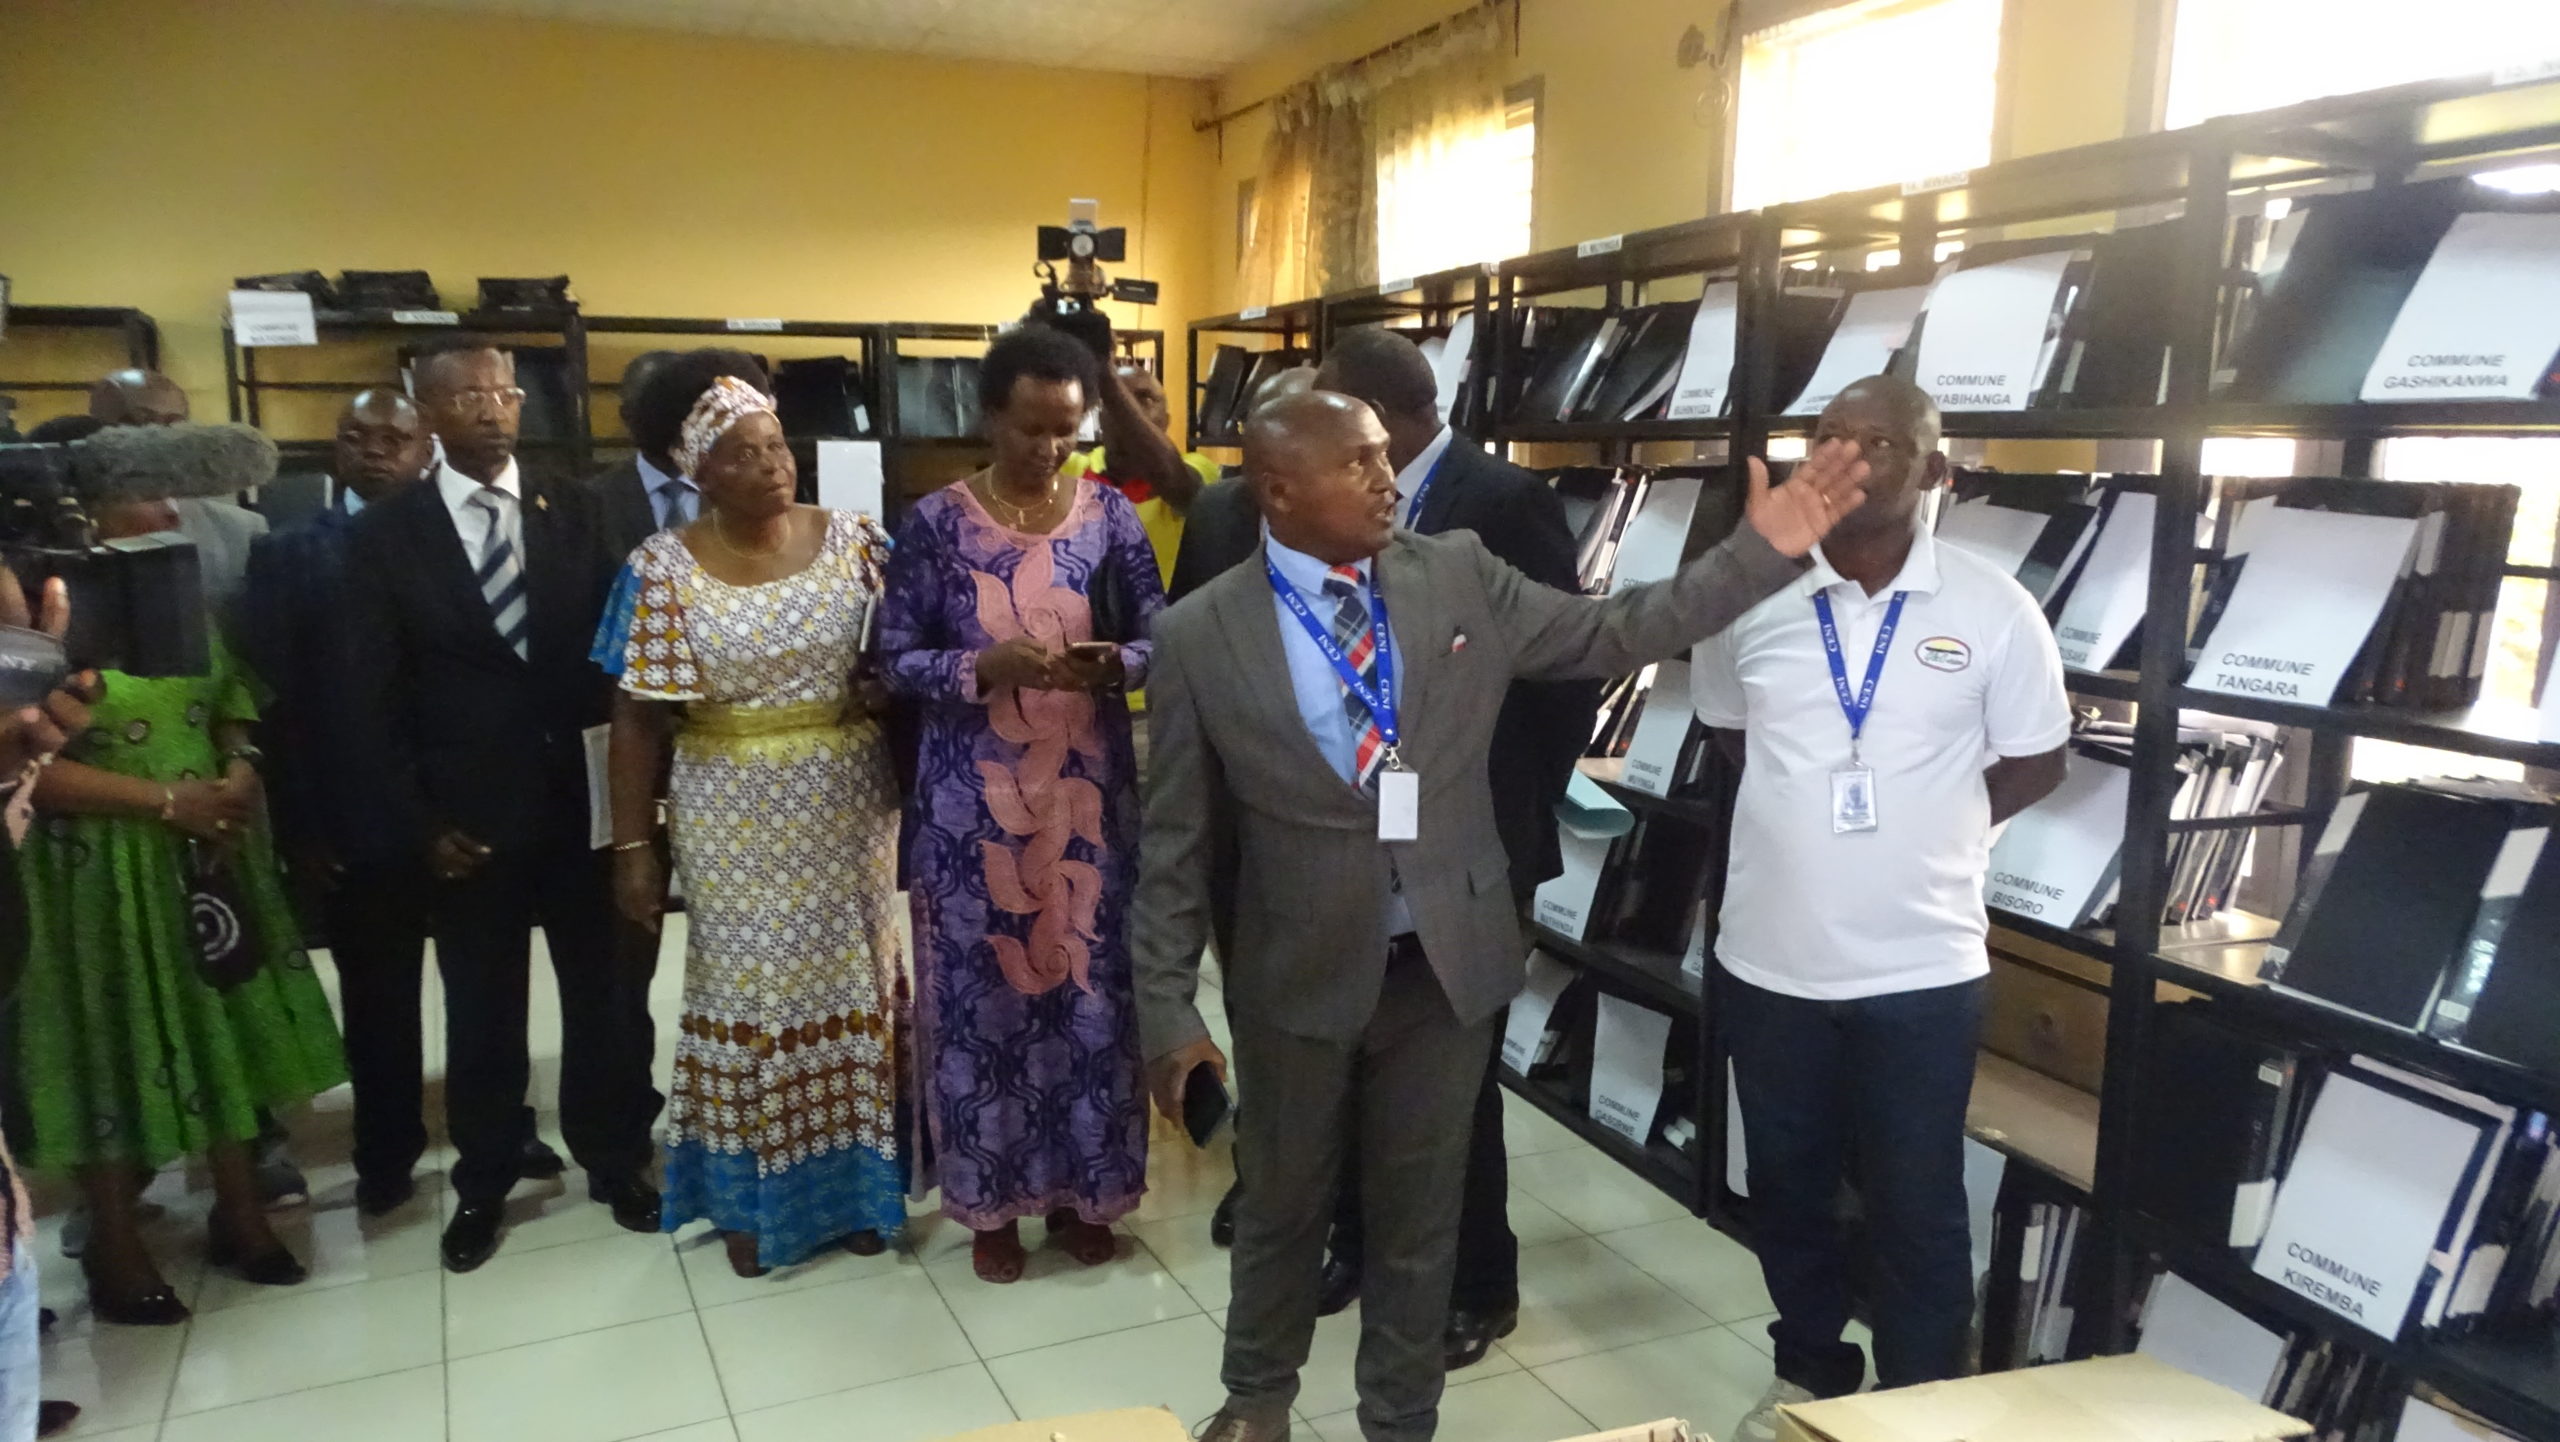  Visite du centre de traitement des données: Etat d’avancement des activités d’enregistrement des électeurs.